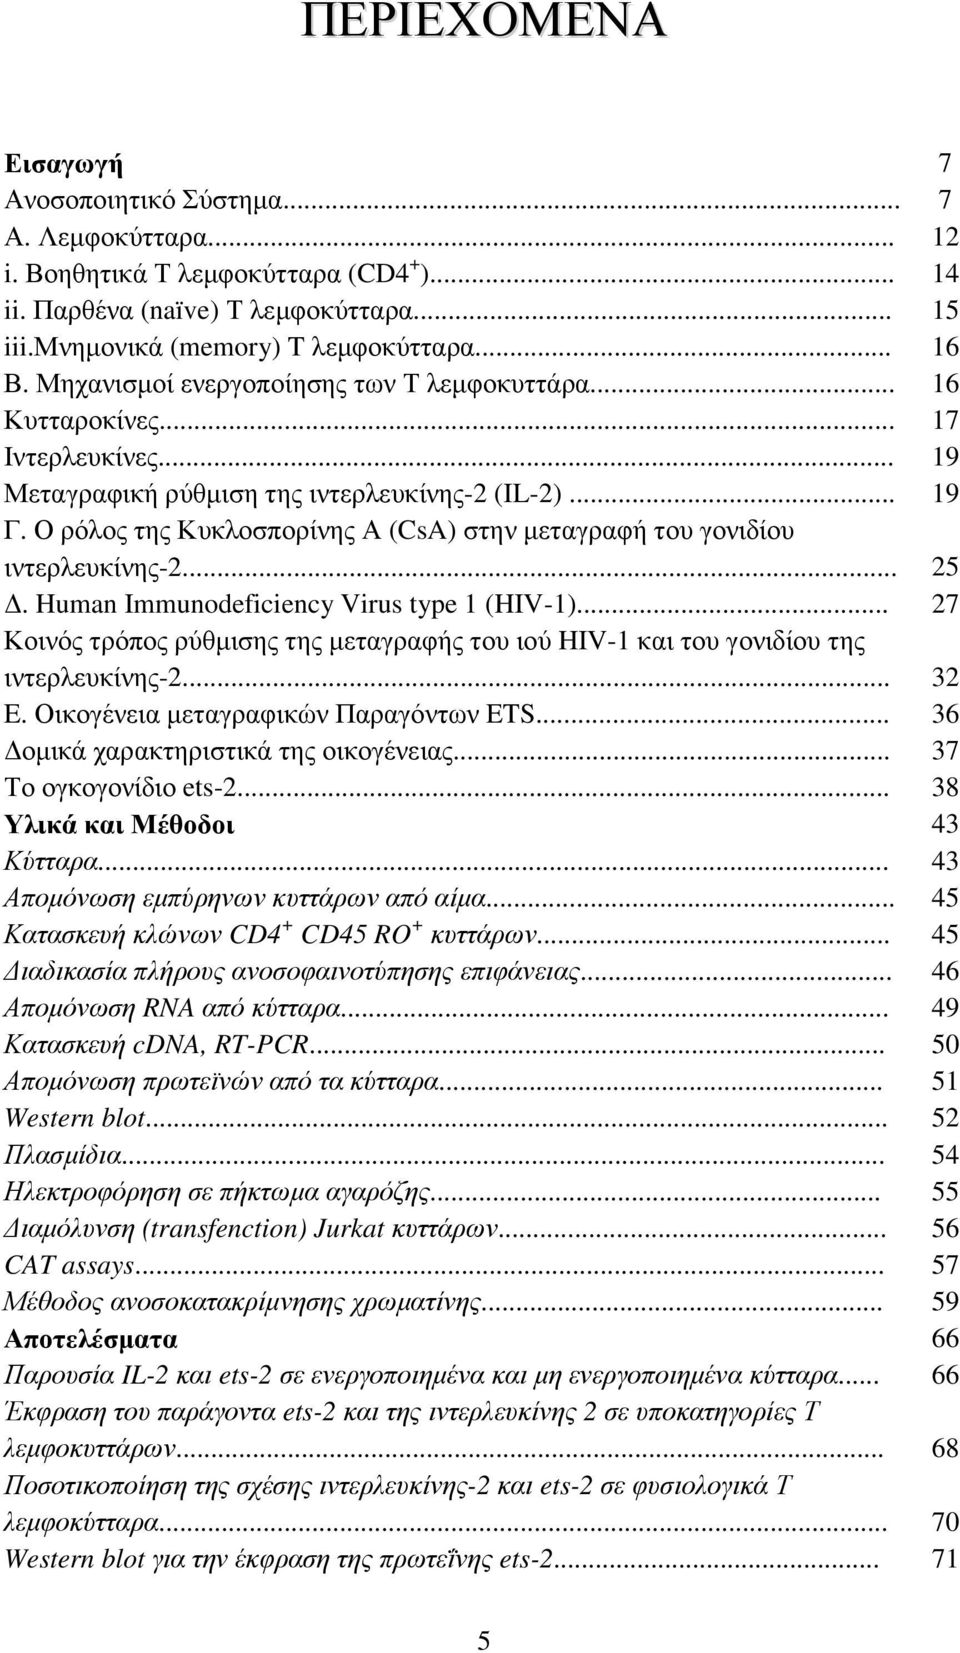 Ο ρόλος της Κυκλοσπορίνης Α (CsA) στην µεταγραφή του γονιδίου ιντερλευκίνης-2... 25. Human Immunodeficiency Virus type 1 (HIV-1).